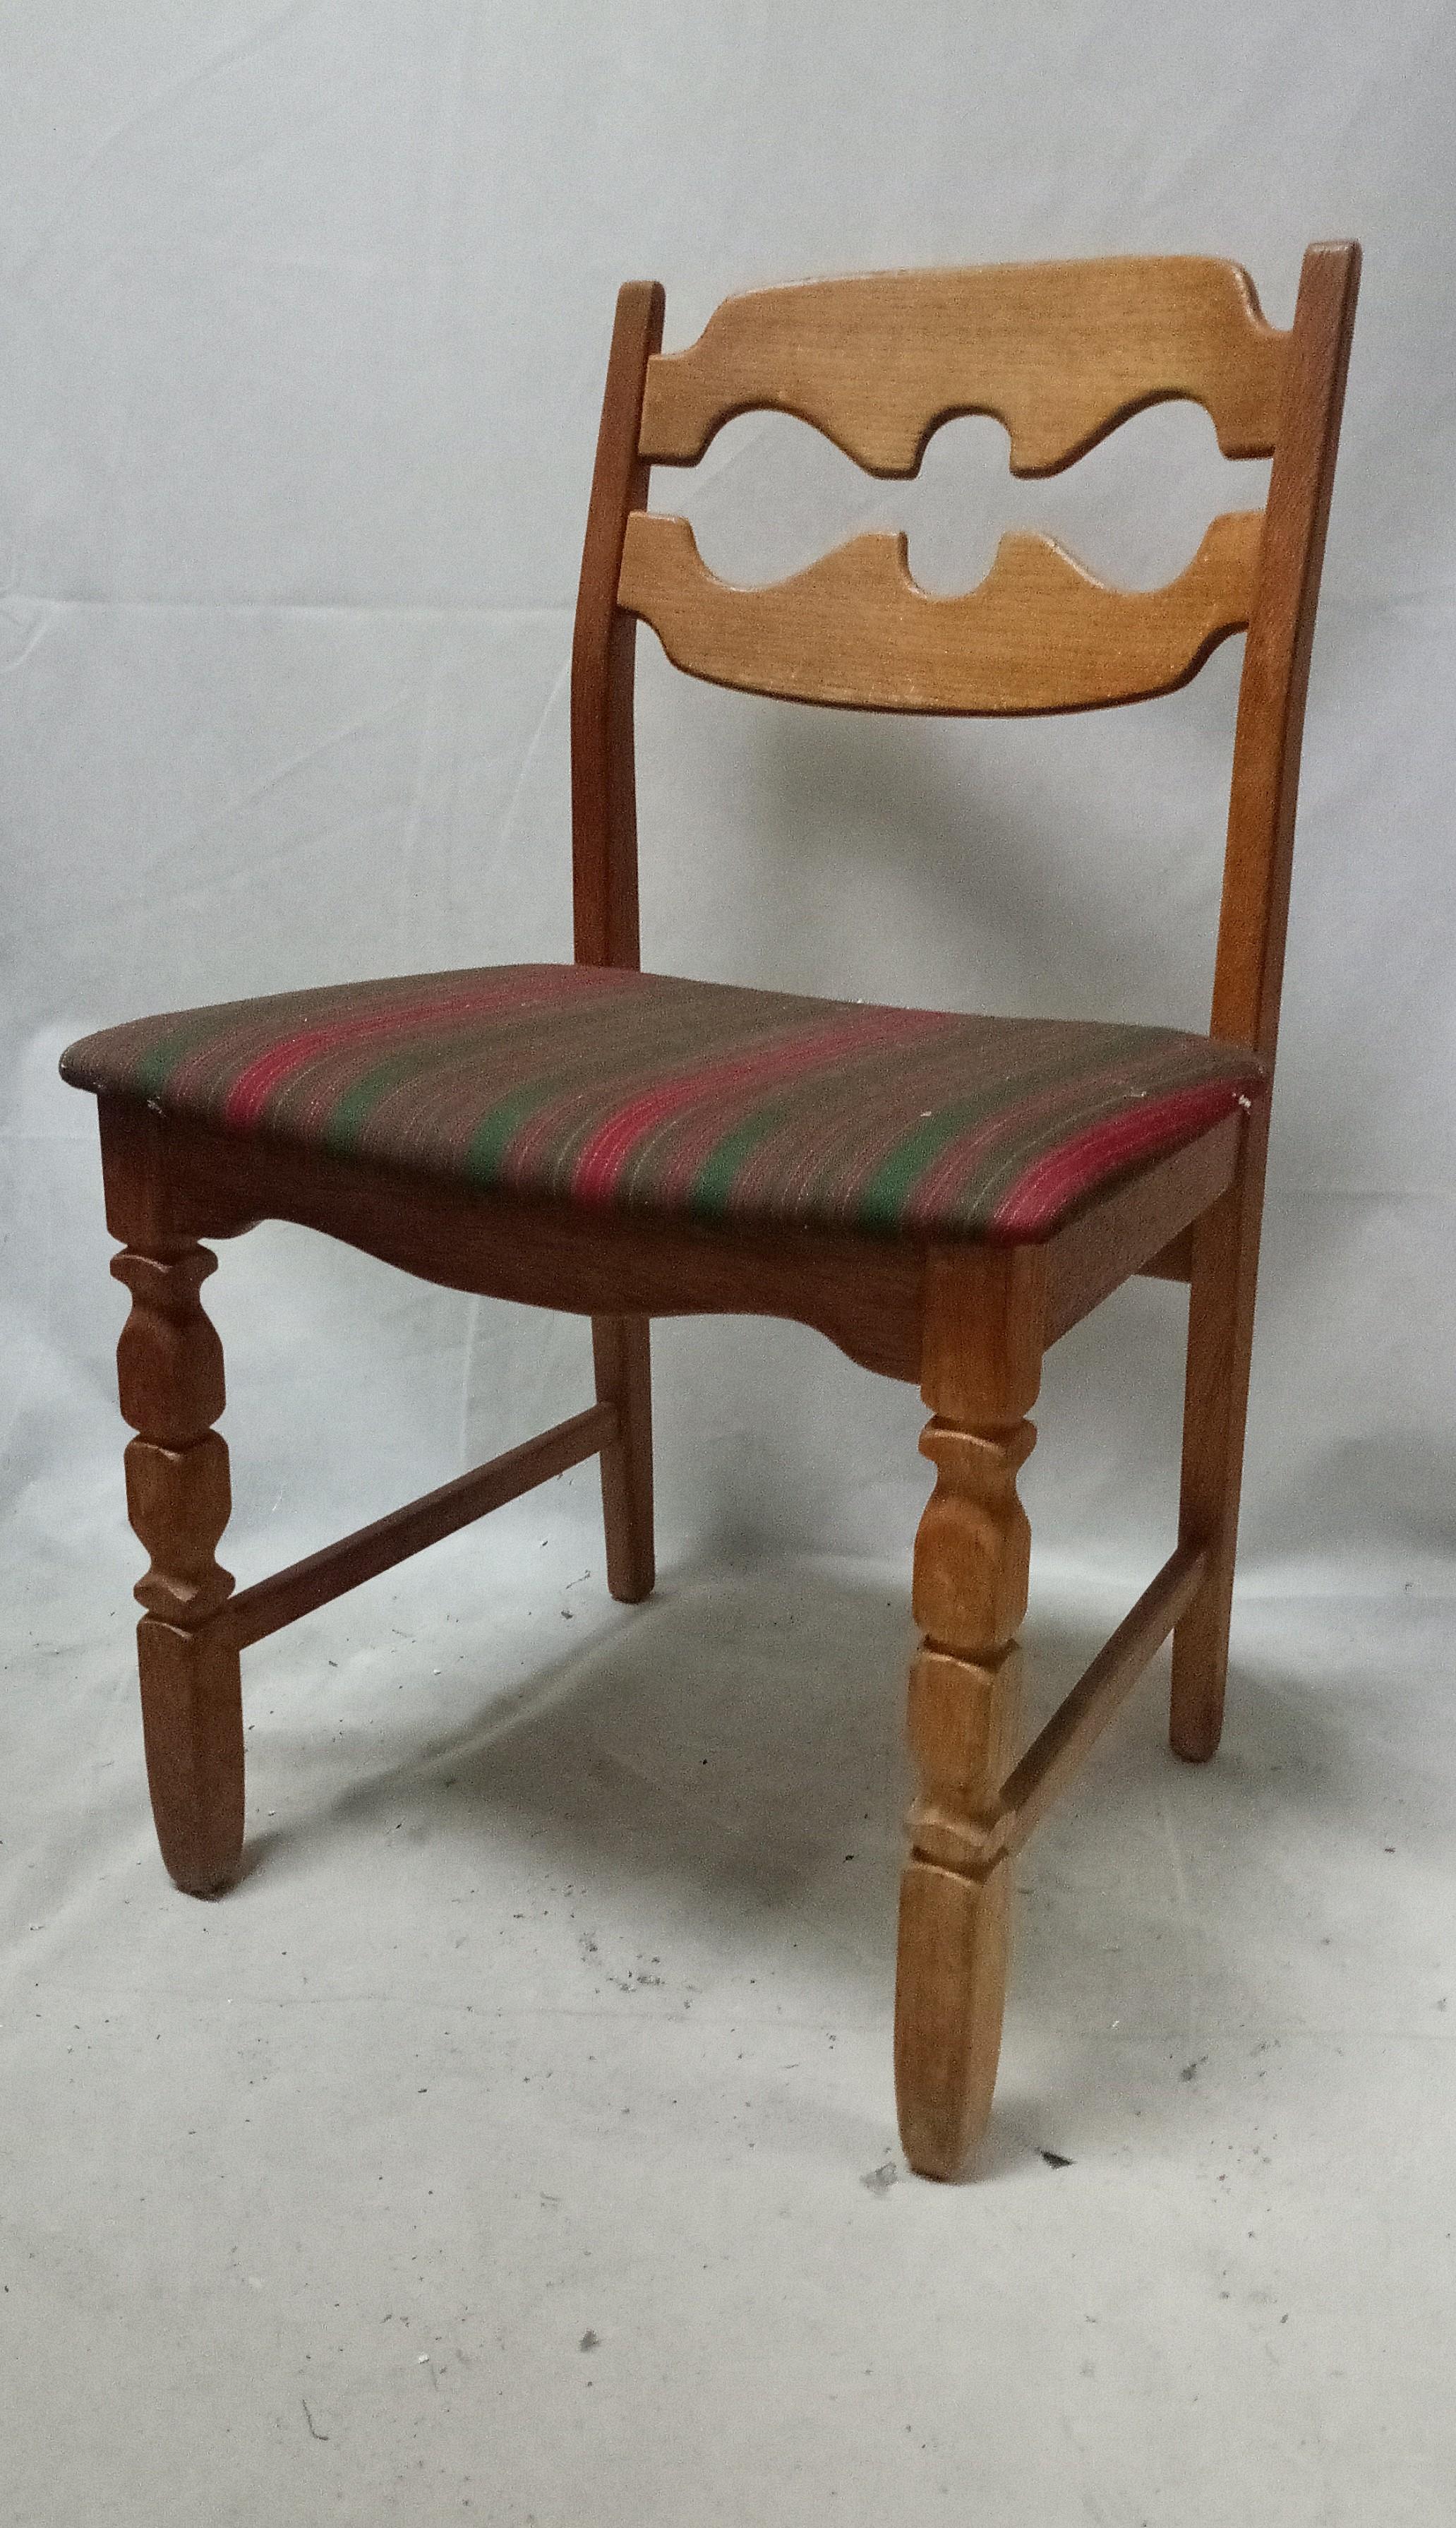 Chaise Razor Blade en chêne par Henning Kjærnulf, 1960s
fabriqué par la société danoise Nyrup Møbelfabrik/ EG Furniture.
La chaise est en chêne massif avec une tapisserie d'origine. 
Belle condition vintage avec une grande patine après une